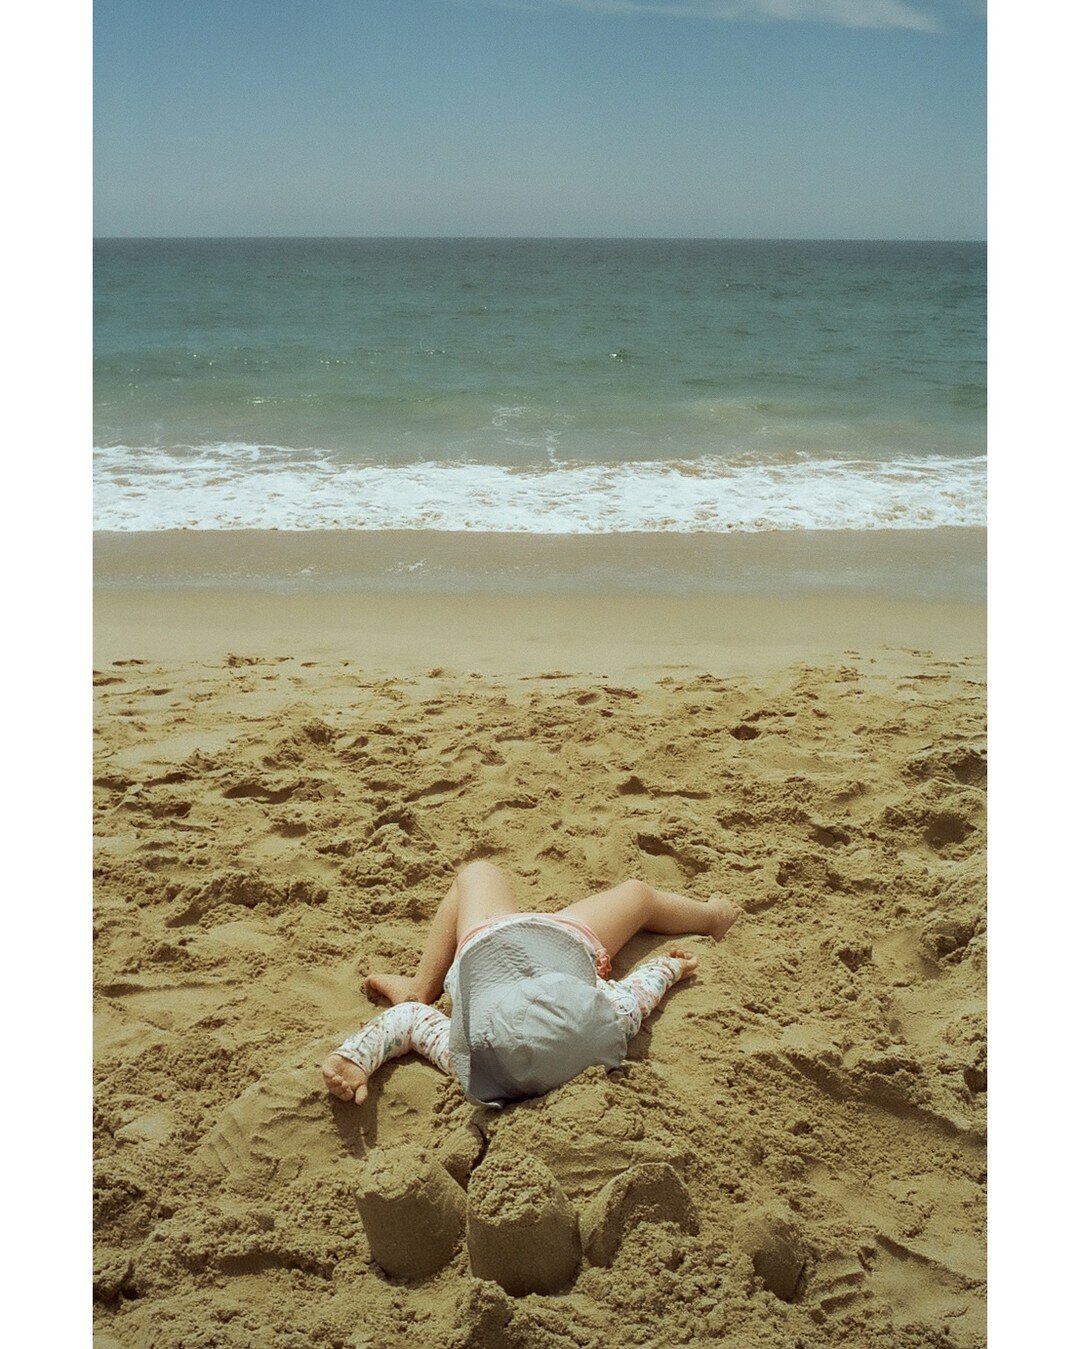 &ldquo;beach dream&hellip;&rdquo;

📷 Voigtlander Bessa R2
🎞️ Gold 200 

#filmfriday

\/\/\/\/\/\/\/\/\/\/\/\